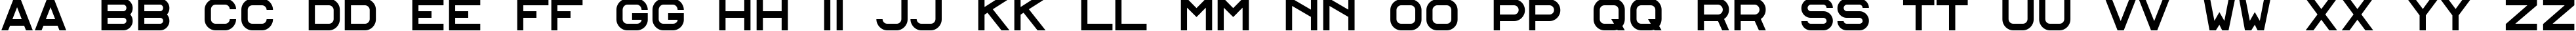 Пример написания английского алфавита шрифтом Alfphabet IV